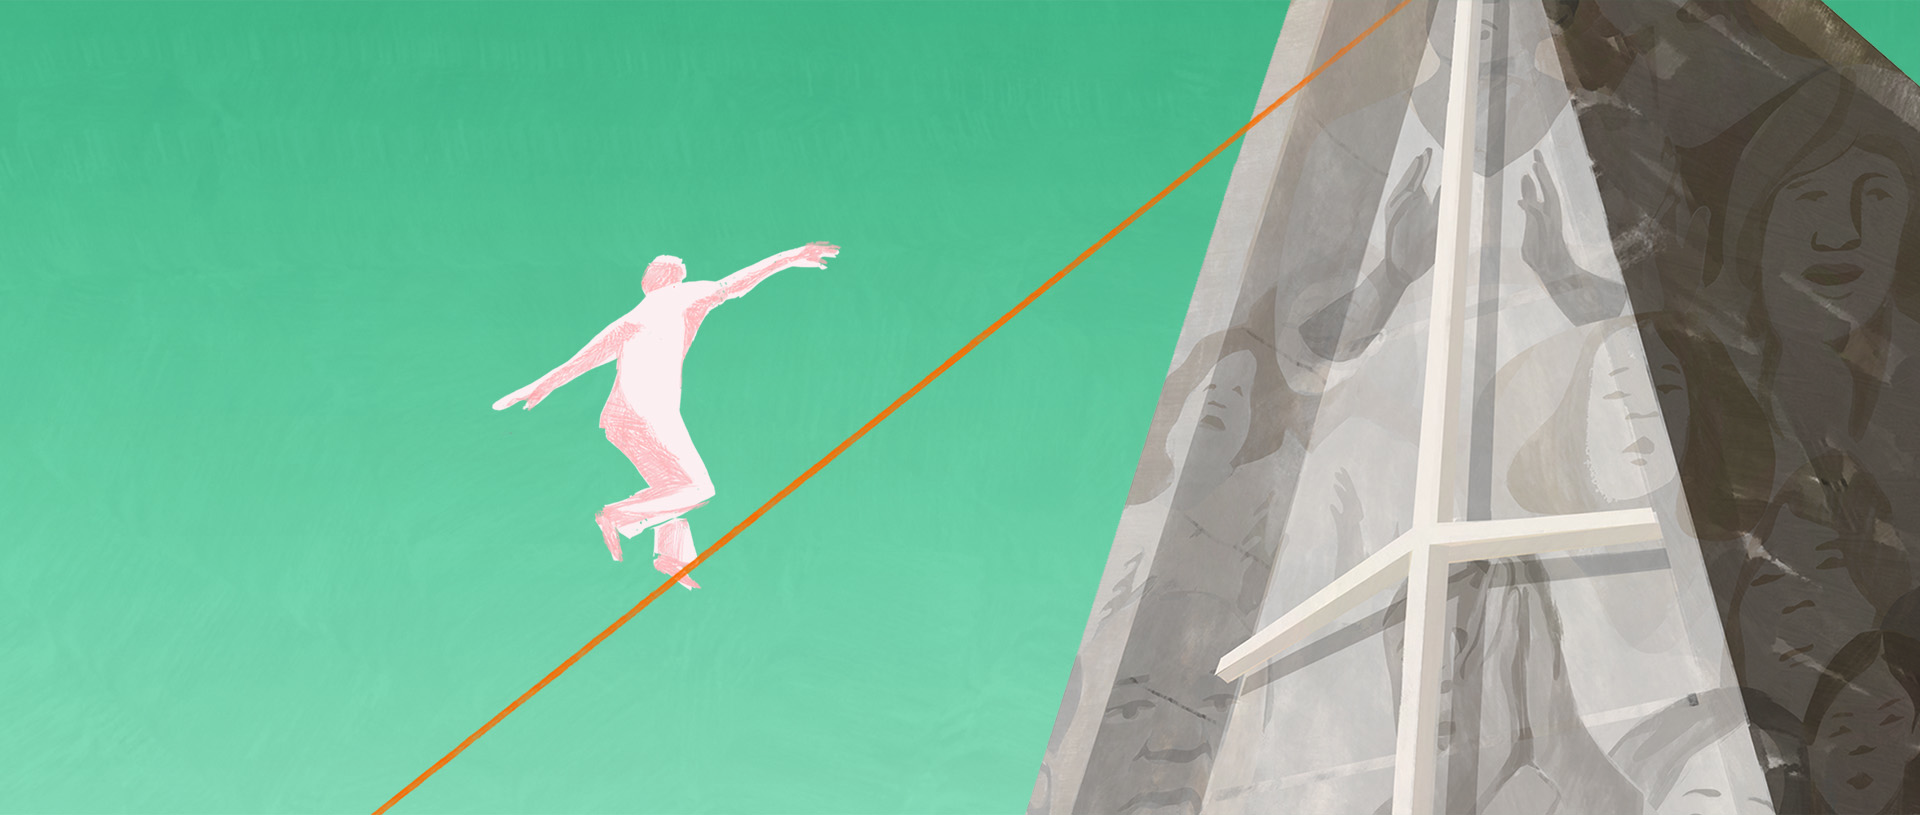 tightrope walking illustration banner